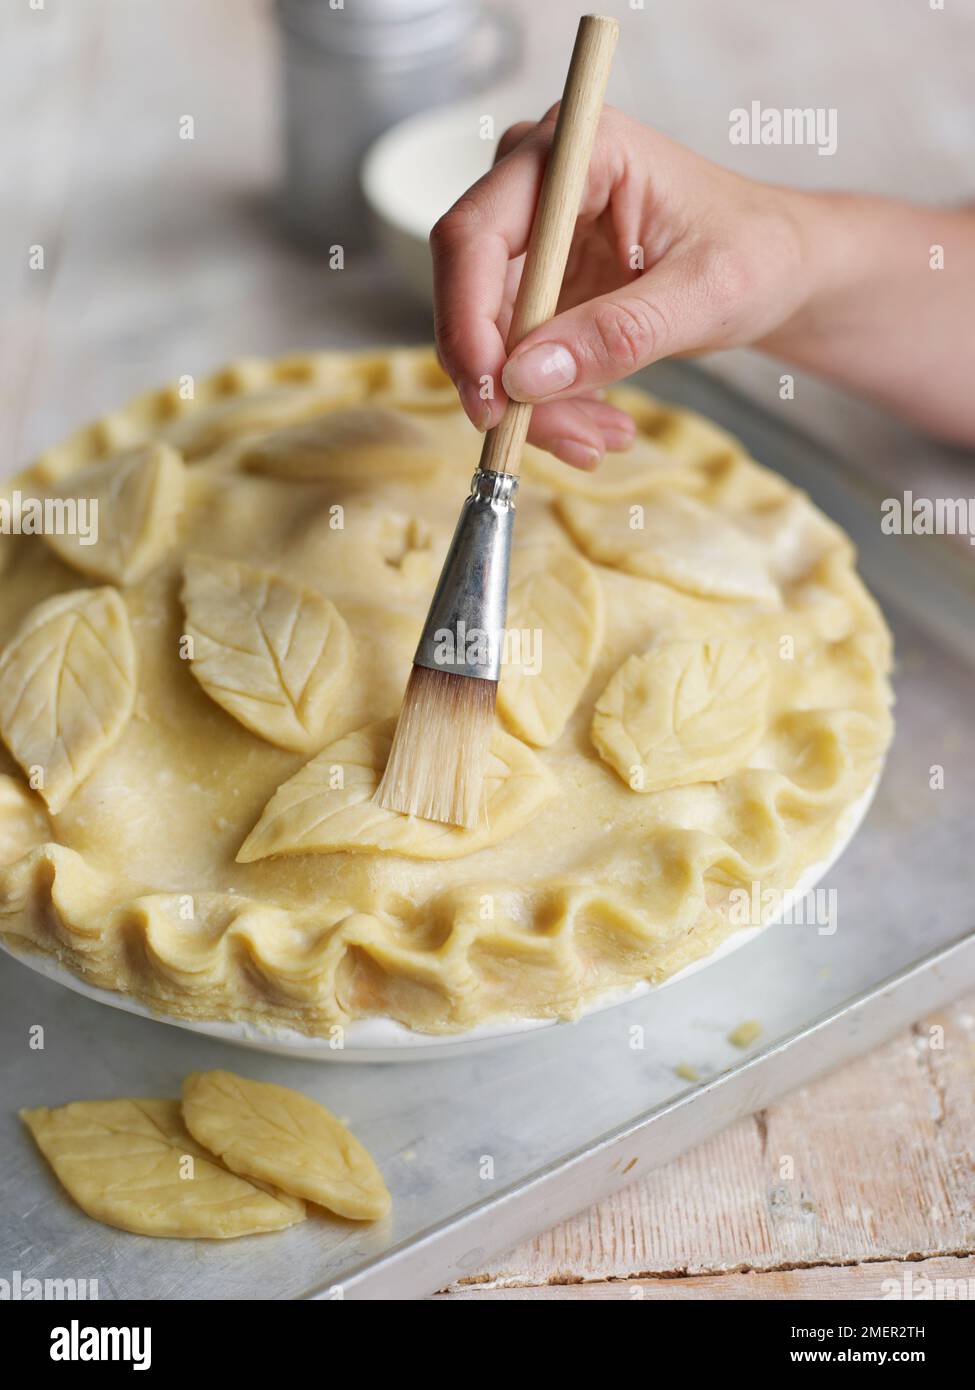 Le brossage à motifs de feuilles de pâte à tarte avec de l'eau Banque D'Images